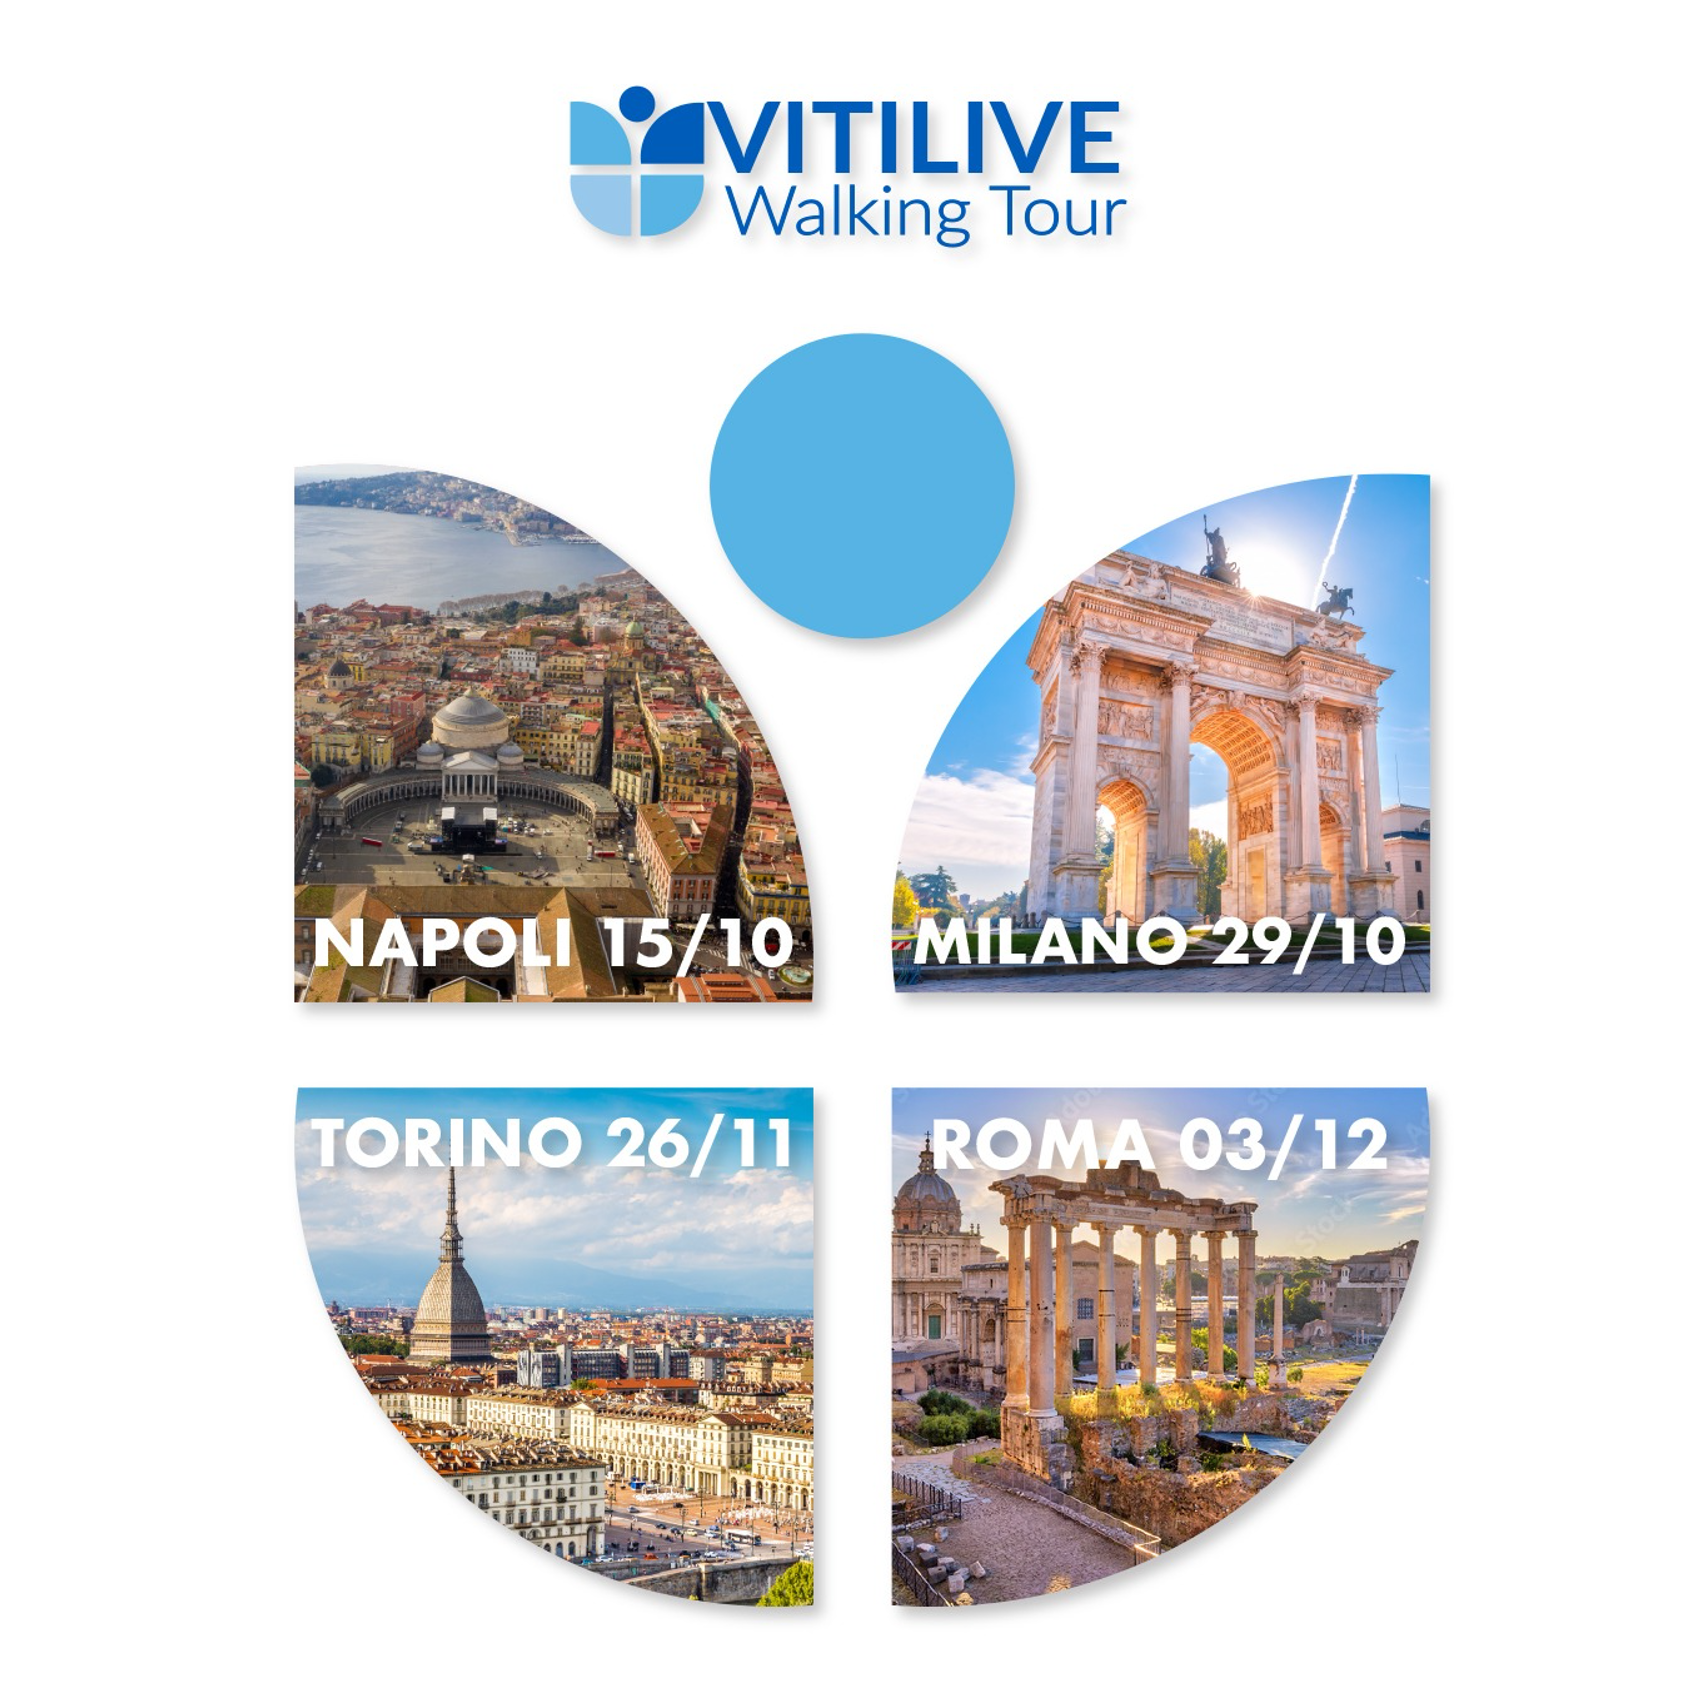 Il Vitilive Walking Tour prevede 4 tappe in altrettante città italiane